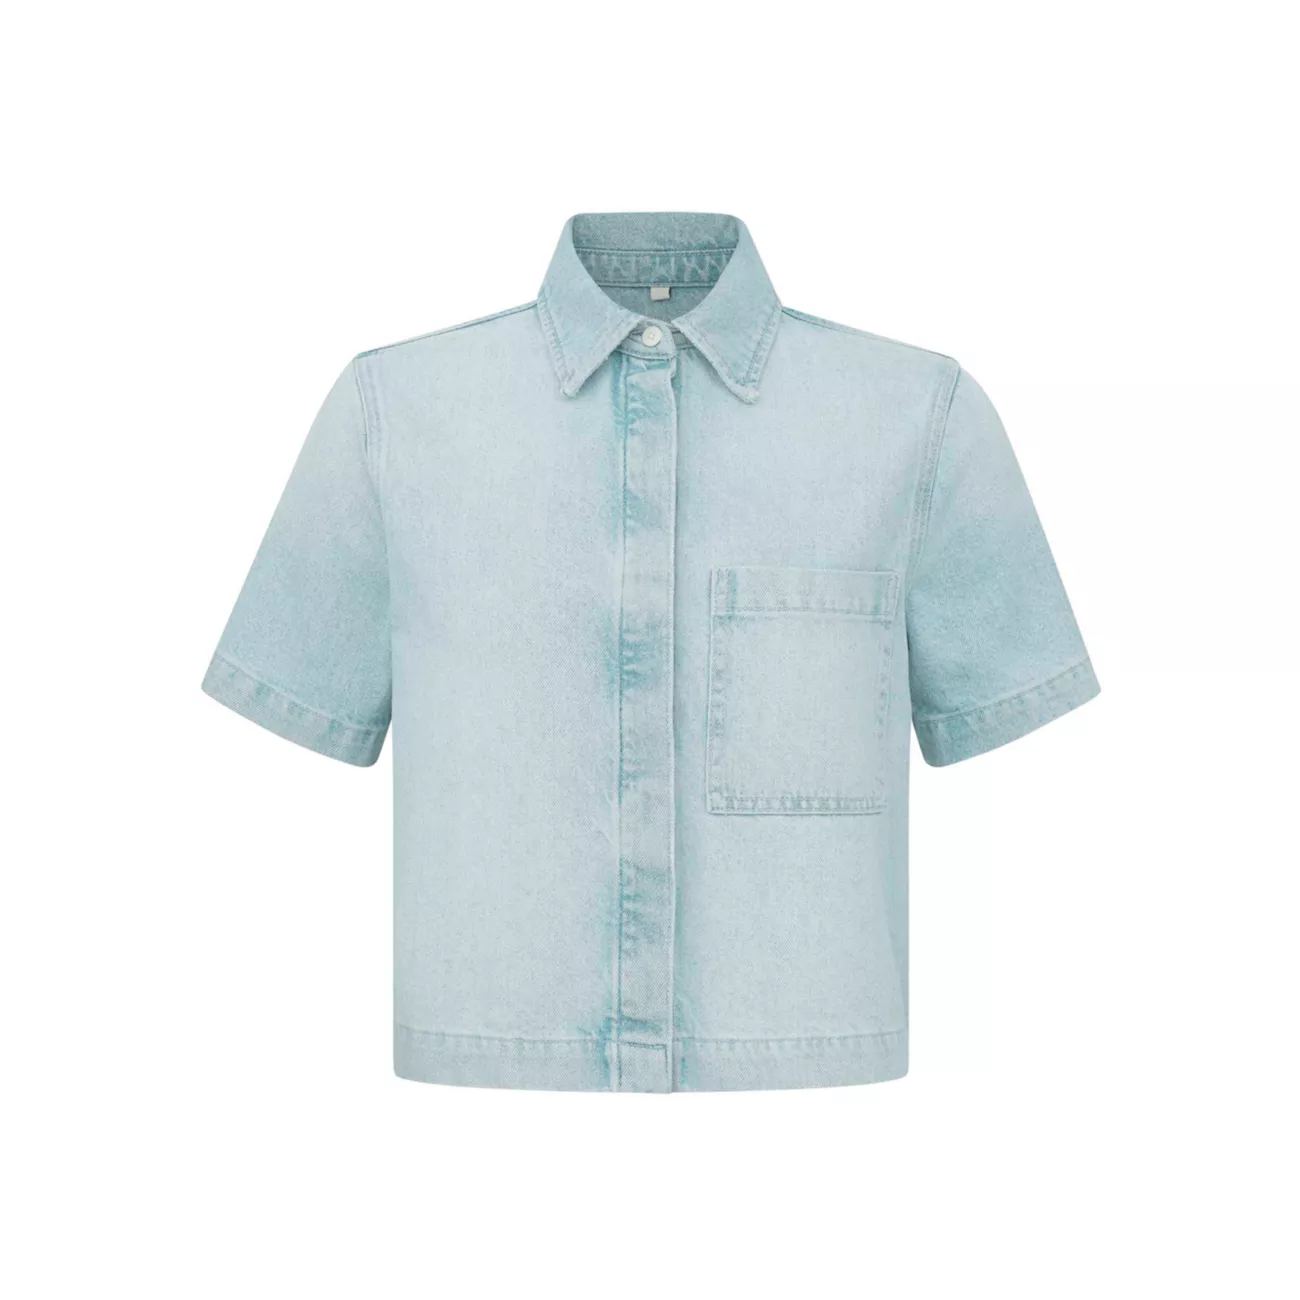 Montauk Short Sleeve Shirt DL1961